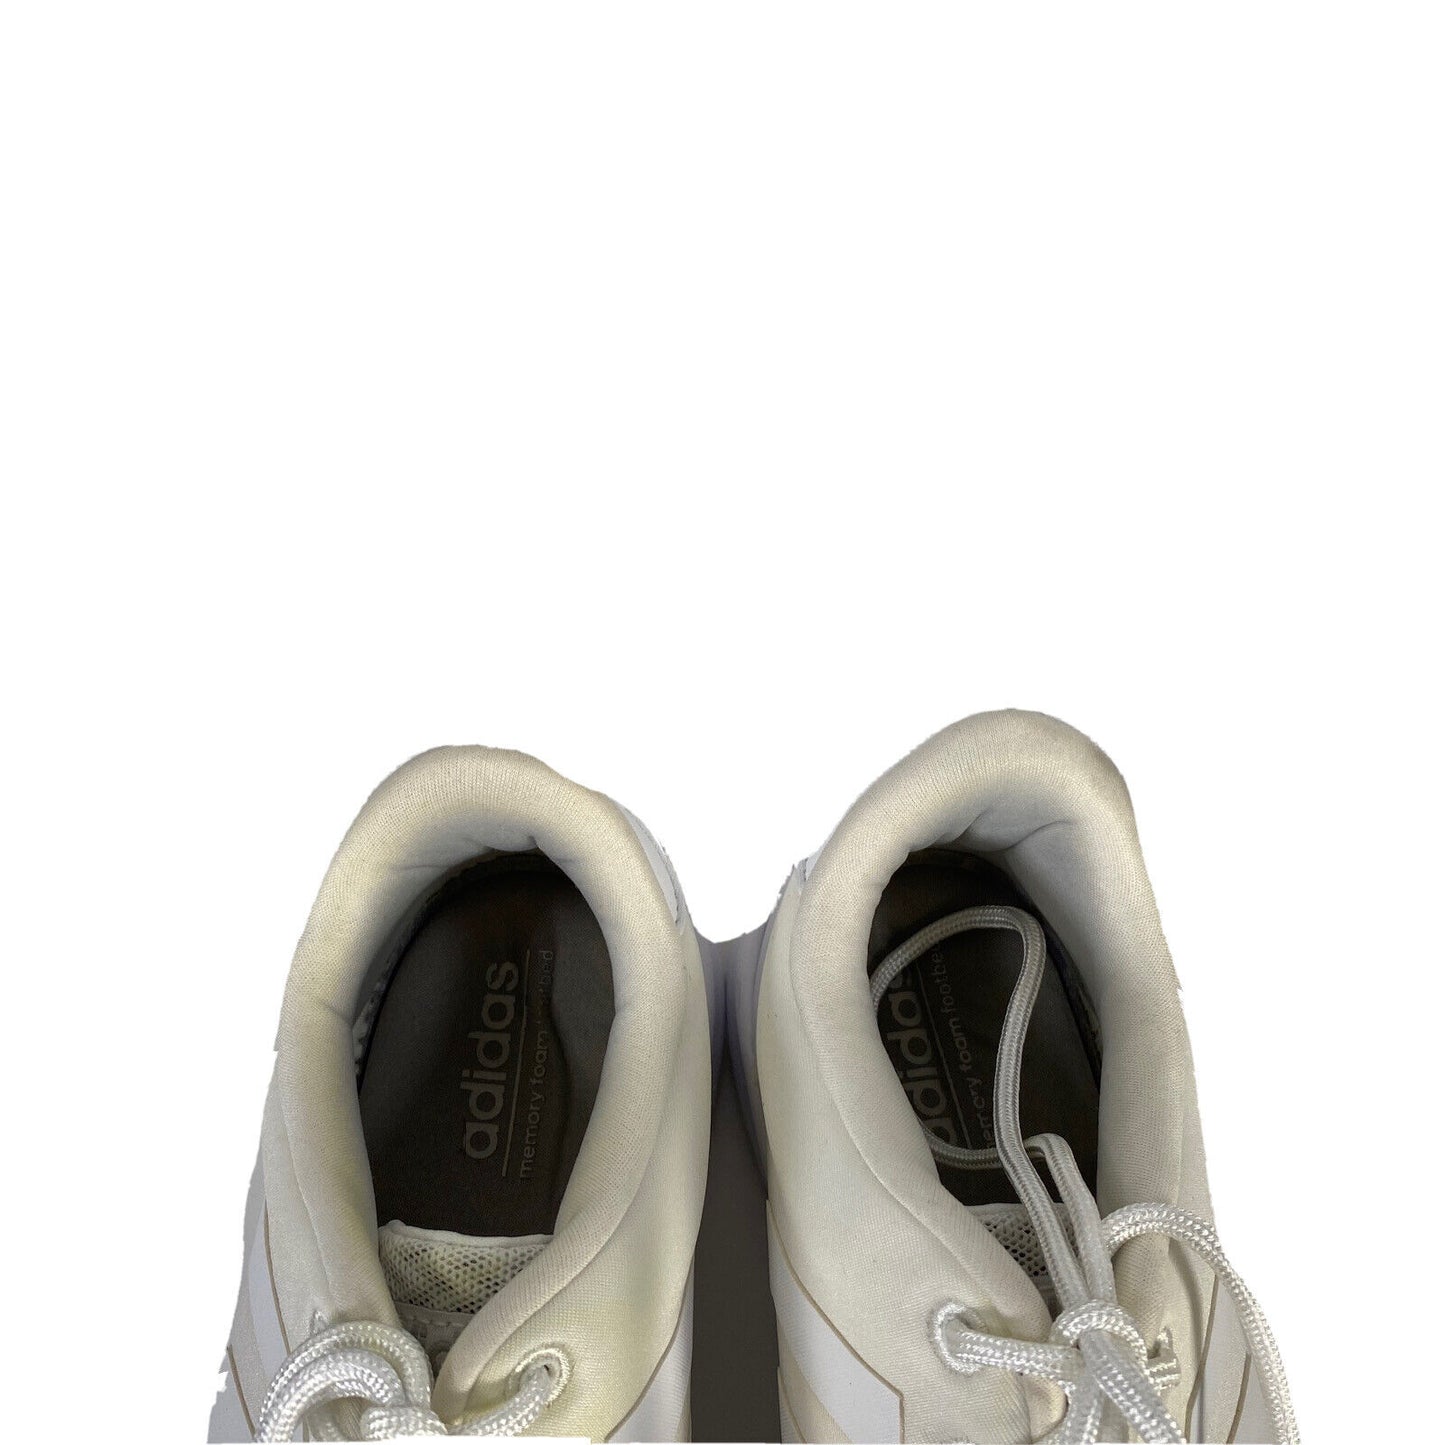 Adidas Zapatillas QT Racer Comfort con cordones Cloadfoam blancas para mujer - 9